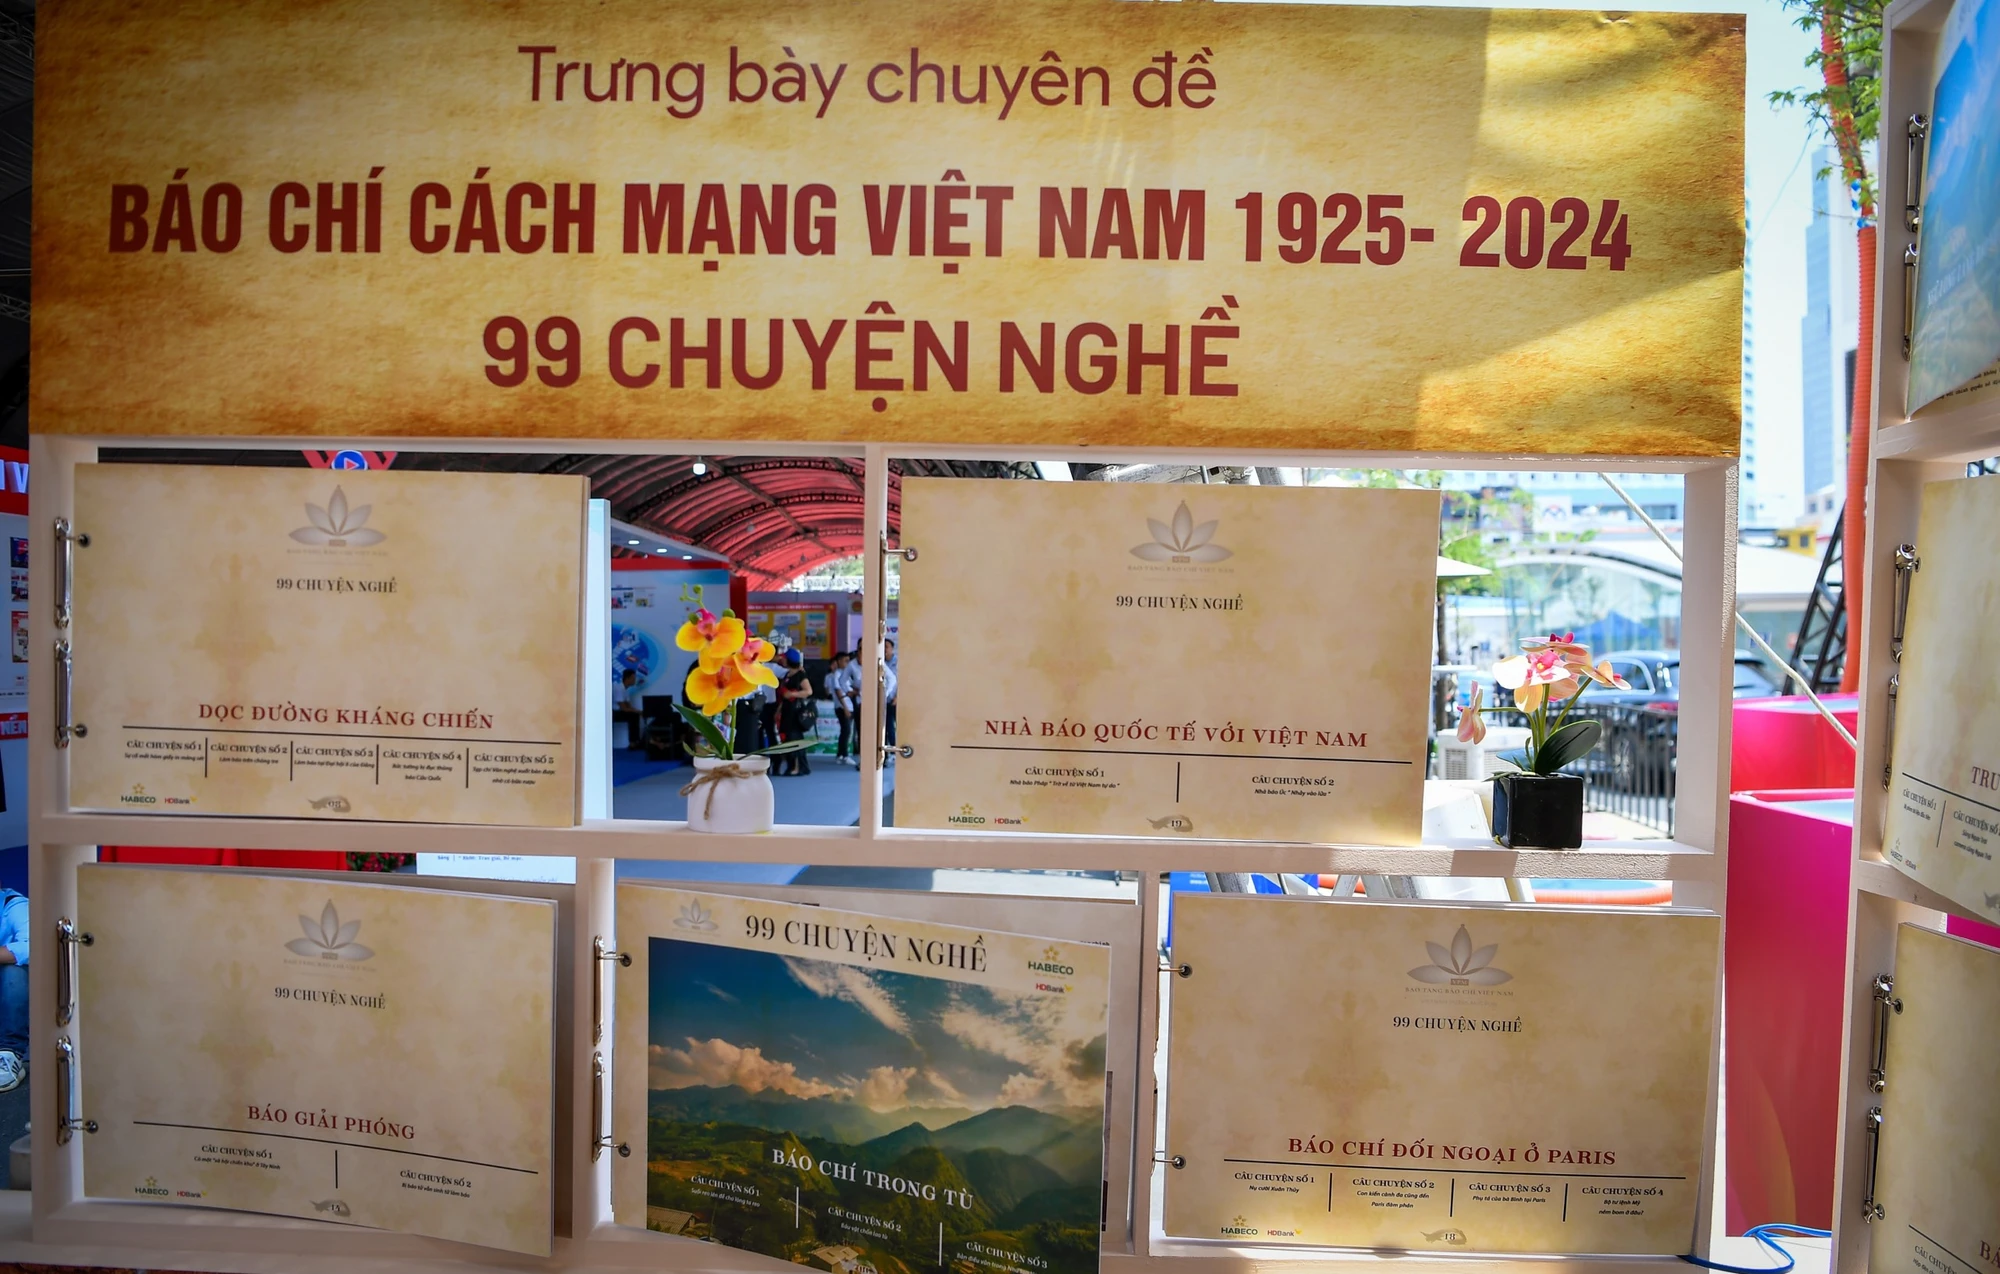 [Ảnh] Ấn tượng khu trưng bày Báo chí Cách mạng Việt Nam 1925-2024: 99 chuyện nghề ảnh 8